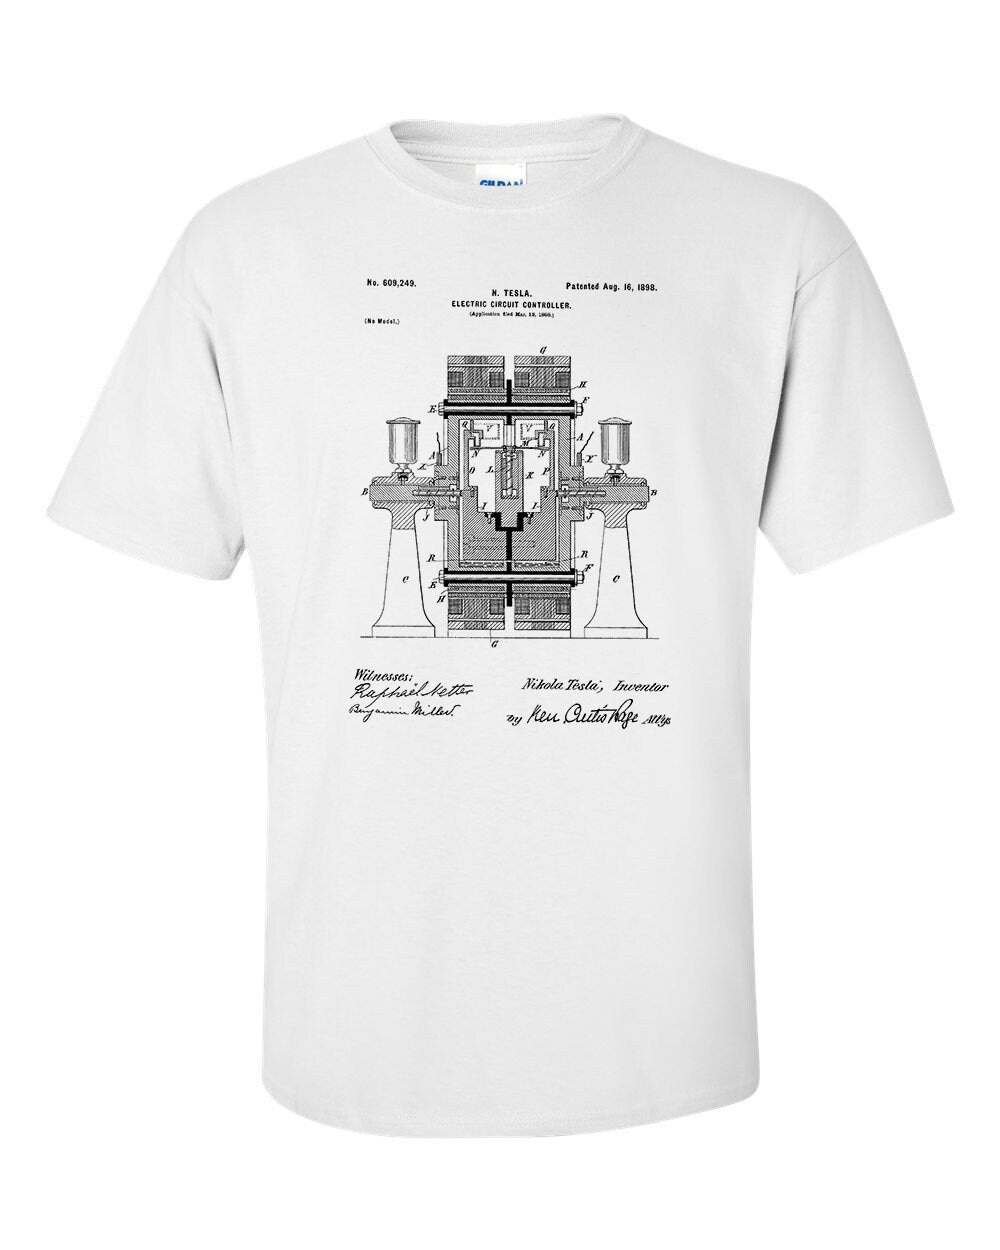 Nicola Tesla Electric Circuit Controller Patent Art Blueprint T-Shirt